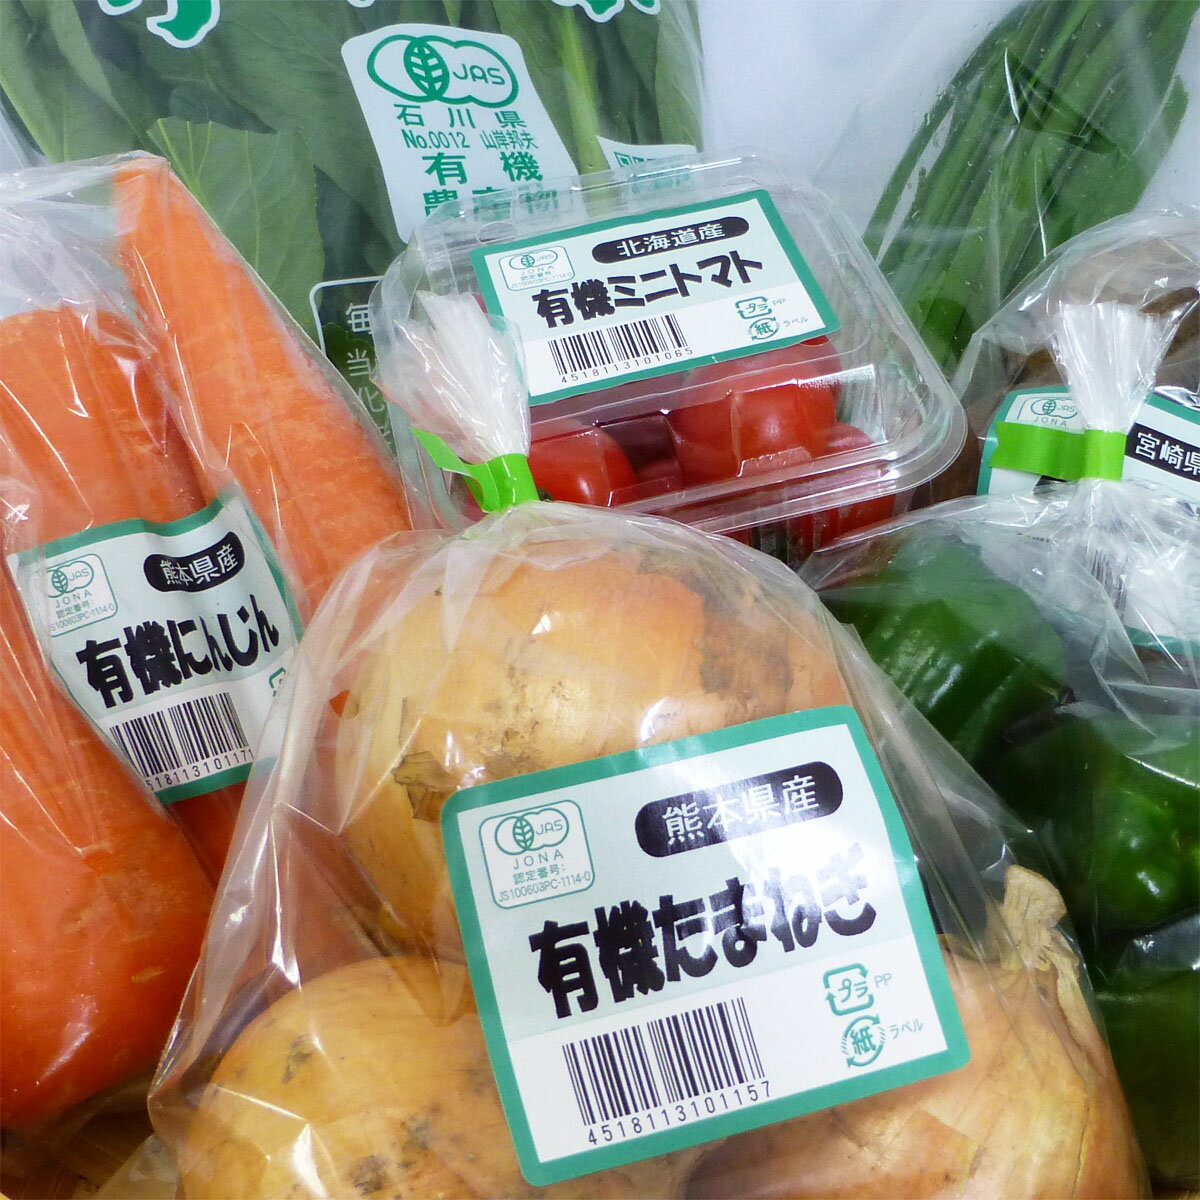 【1品ずつ個包装】無農薬 有機野菜 セット 10品目 オーガニックの野菜セット